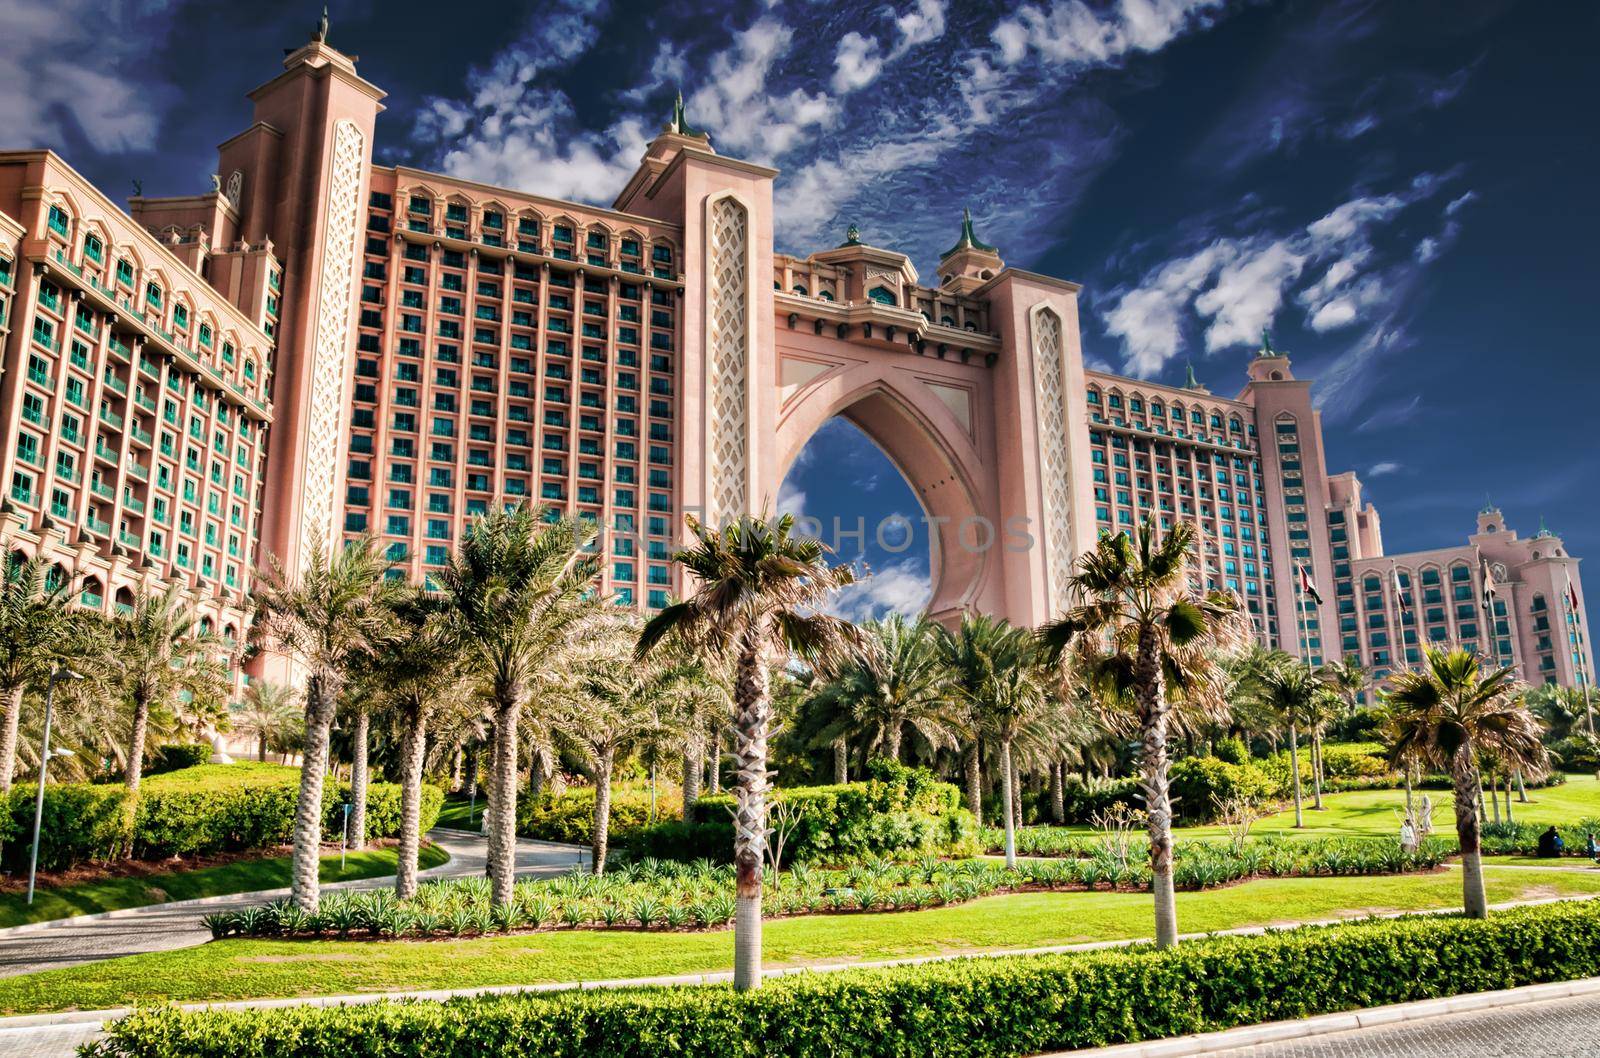 Atlantis Hotel in Dubai by GekaSkr